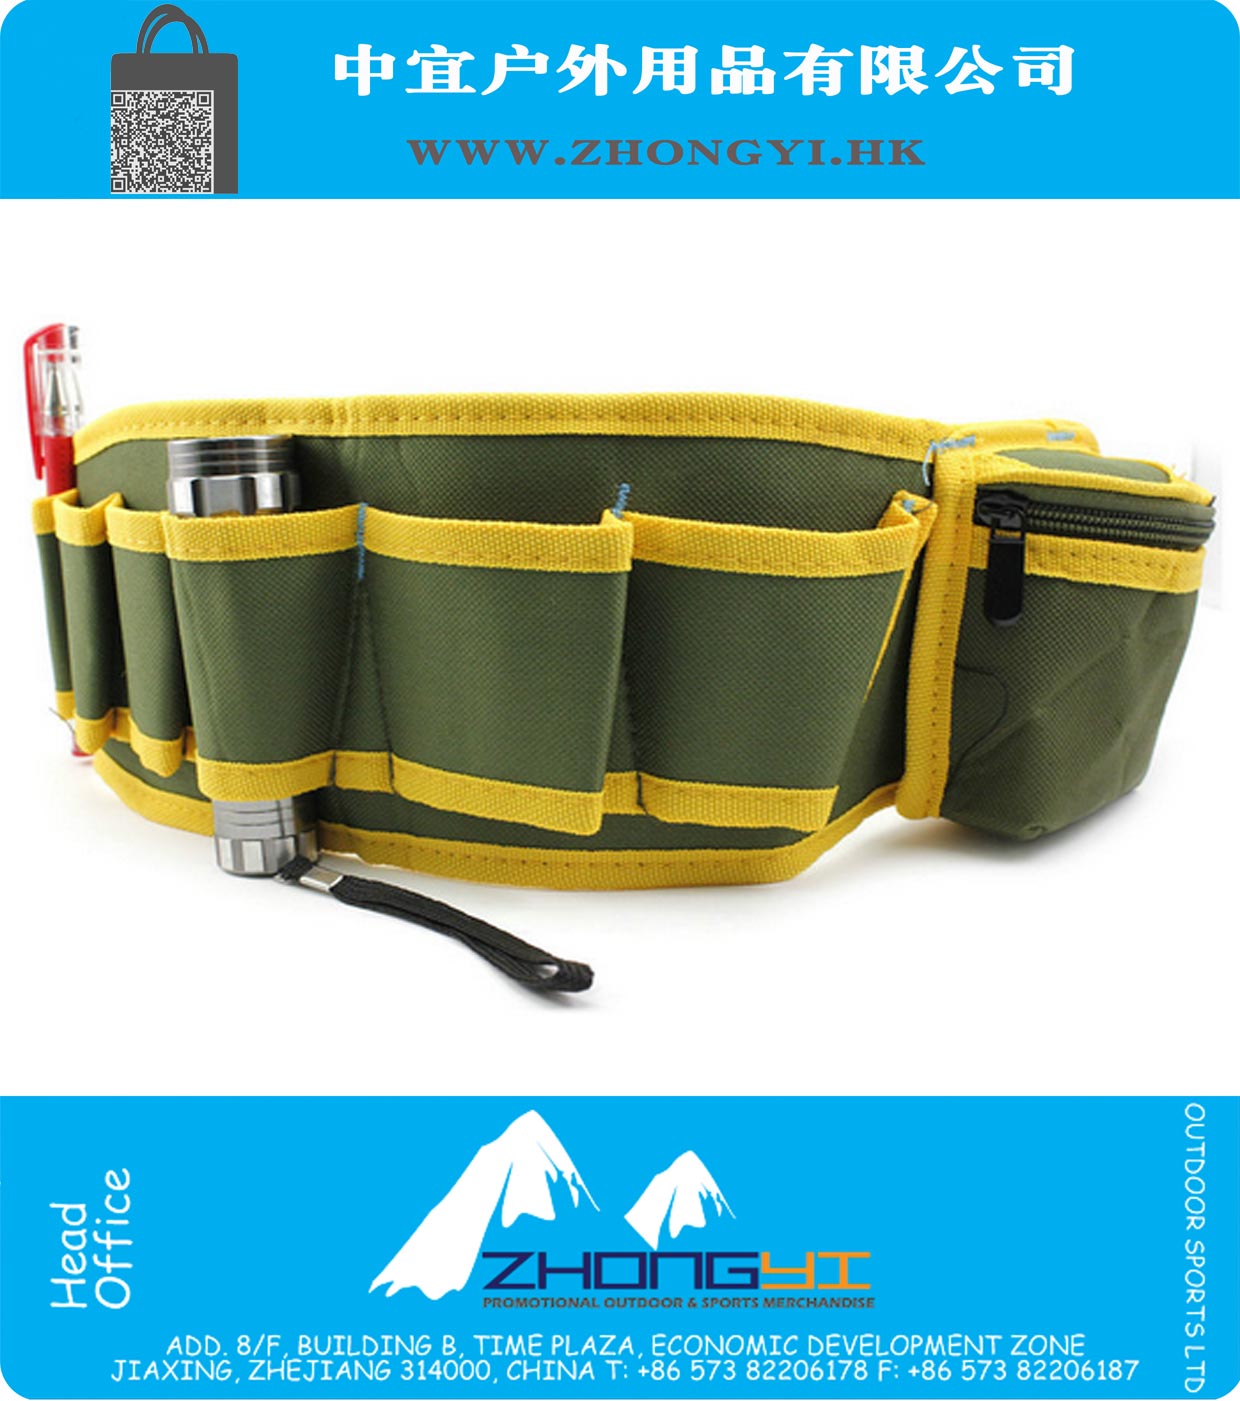 Multifuncionais Mecânica Durable Hardware Canvas ferramenta Safe Bag Belt Pouch Utility Kit Organizador do bolso armazenamento saco